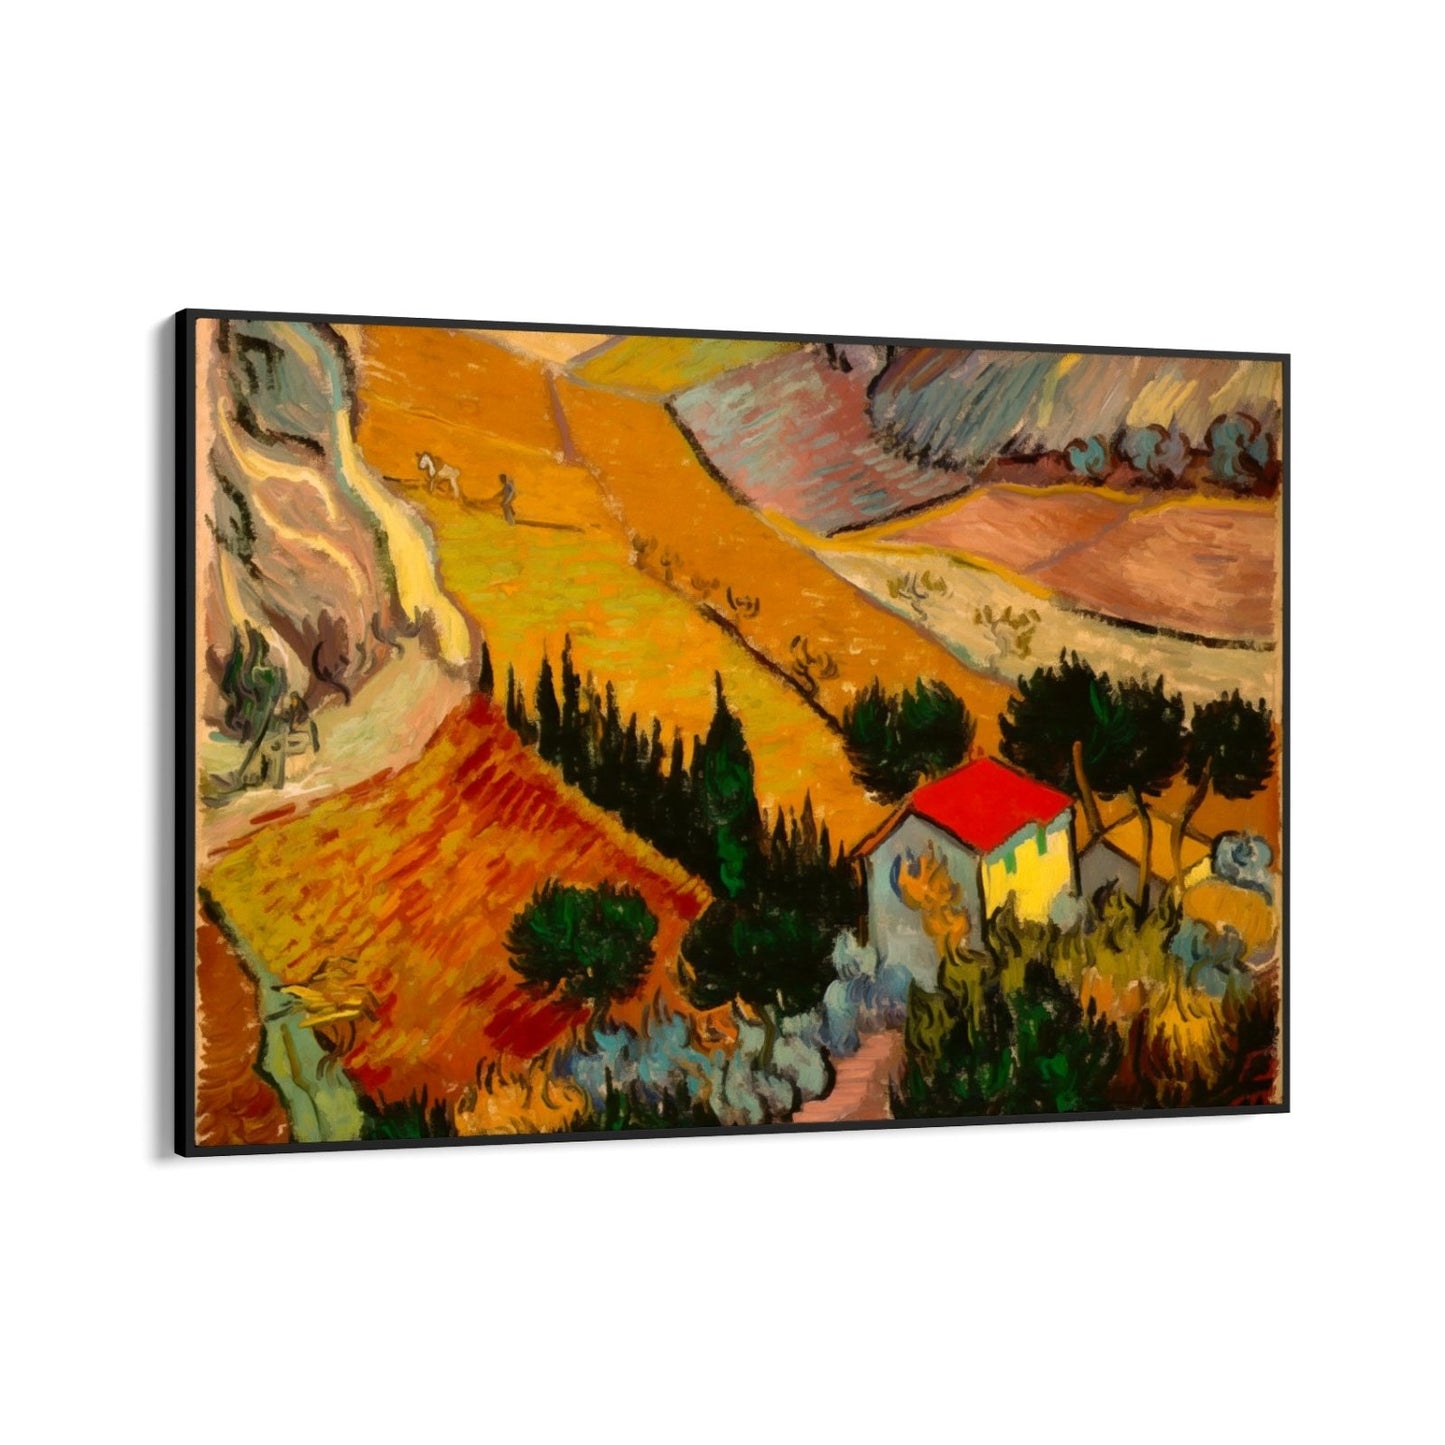 Landskap med hus och plöjare, Vincent Van Gogh